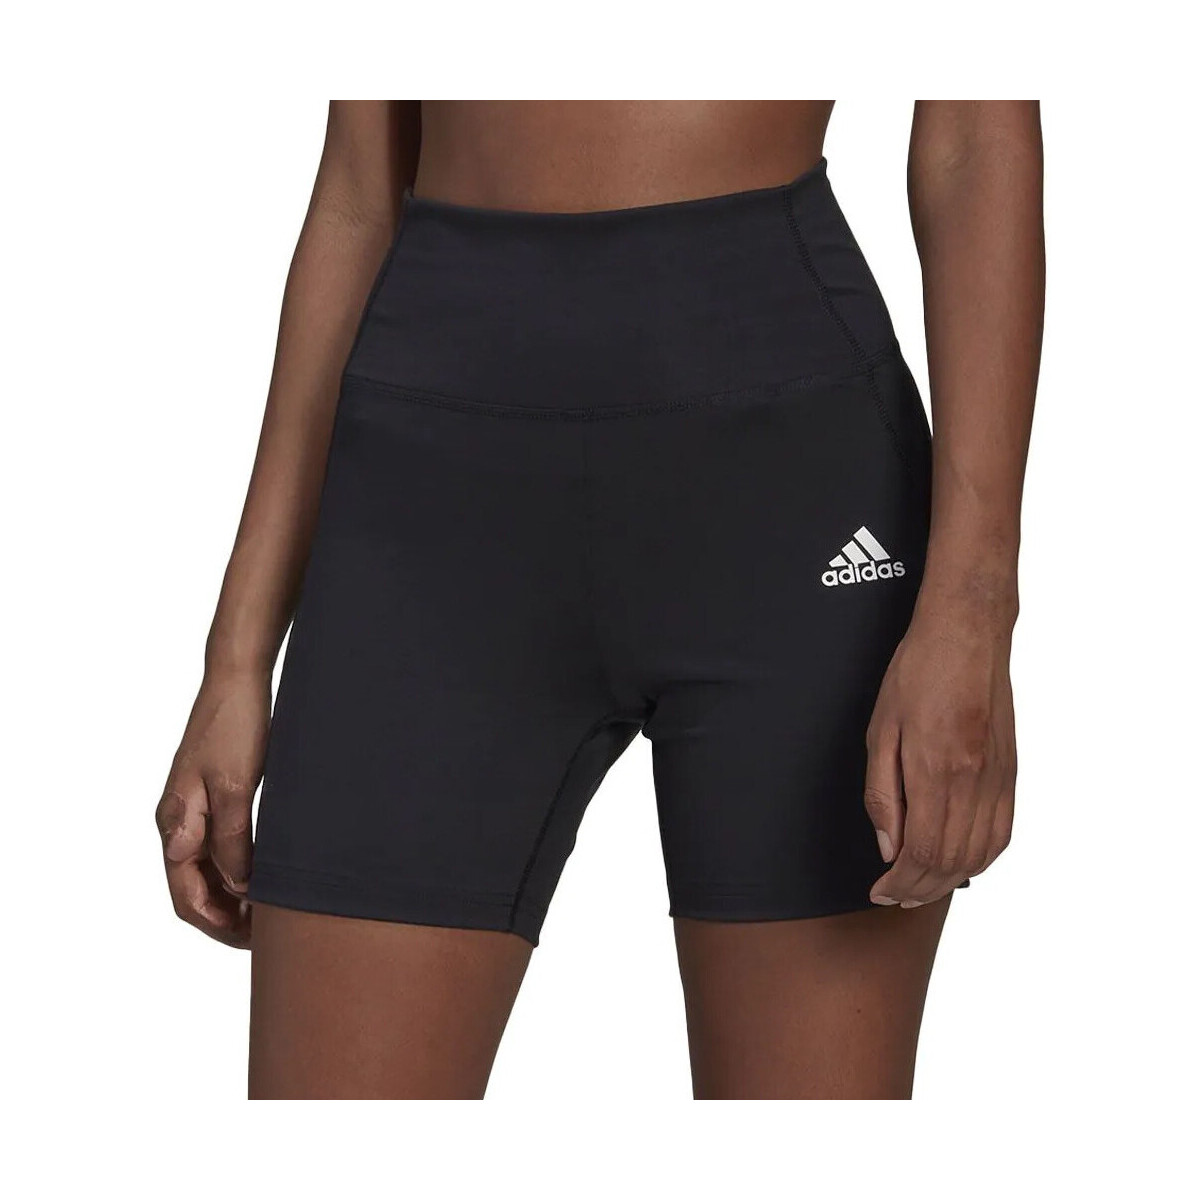 Kleidung Damen Shorts / Bermudas adidas Originals HE9263 Schwarz